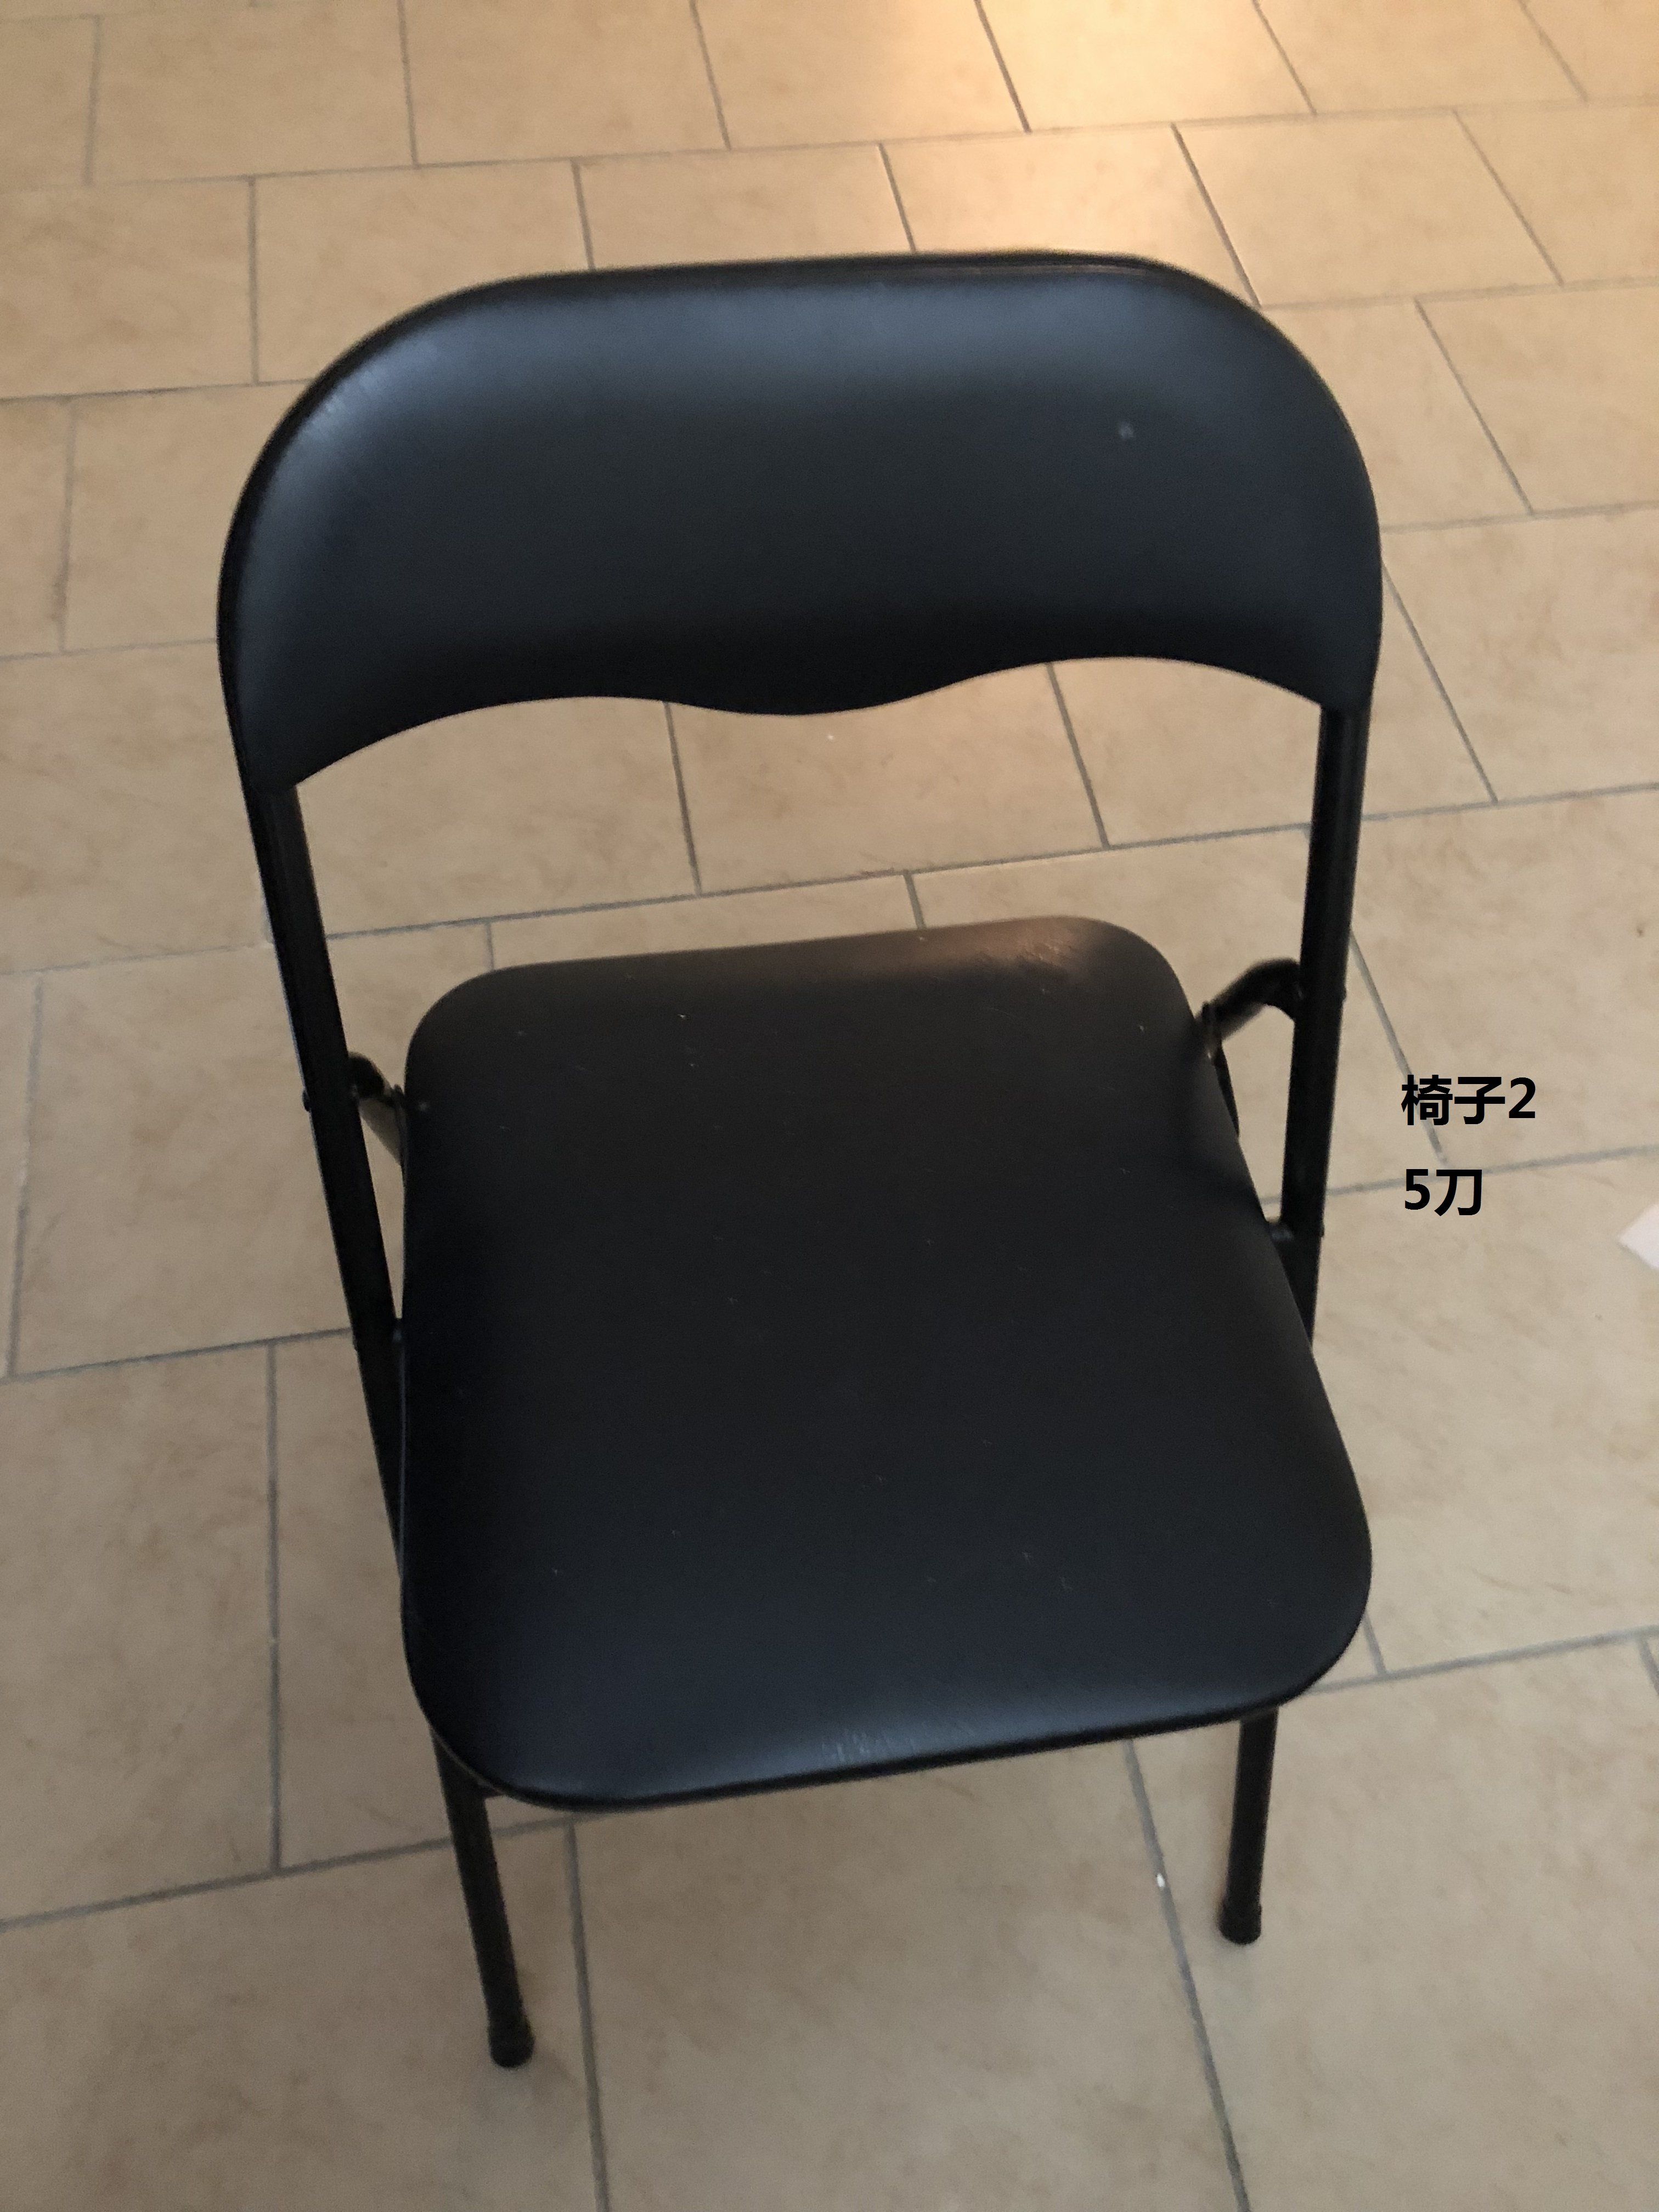 002椅子2.jpg